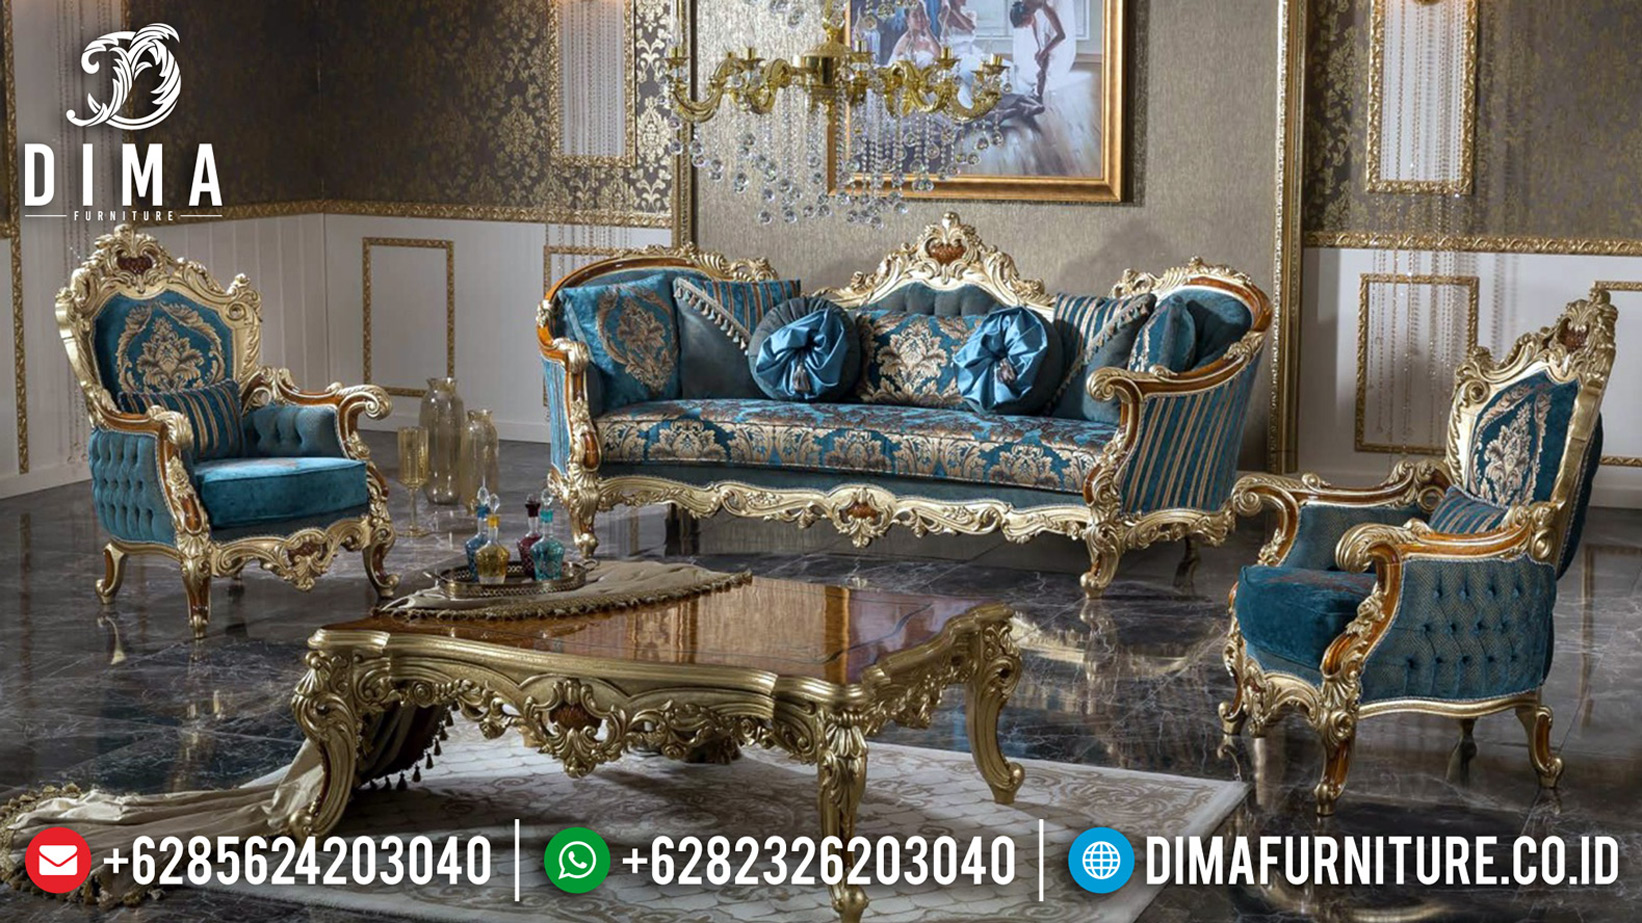 Jual Sofa Tamu Ukiran Jepara Luxury Classic Elegant Design Itialan BT-0629